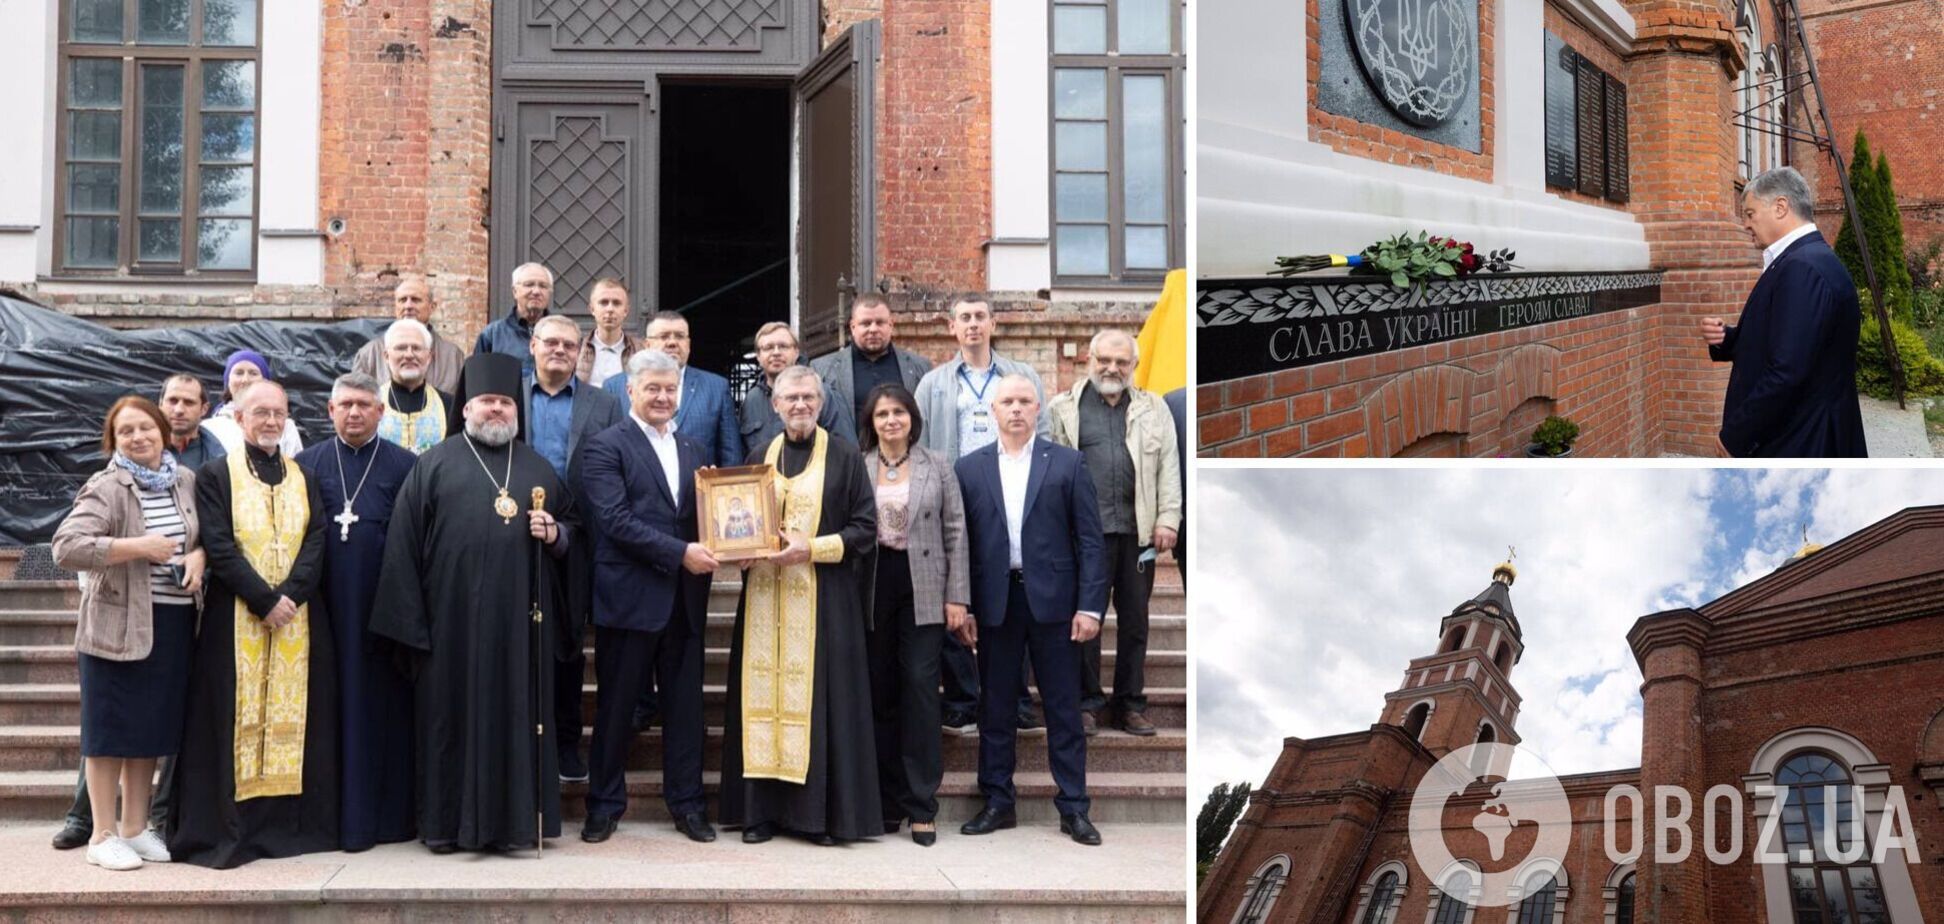 Порошенко в Харькове посетил Храм Иоанна Богослова